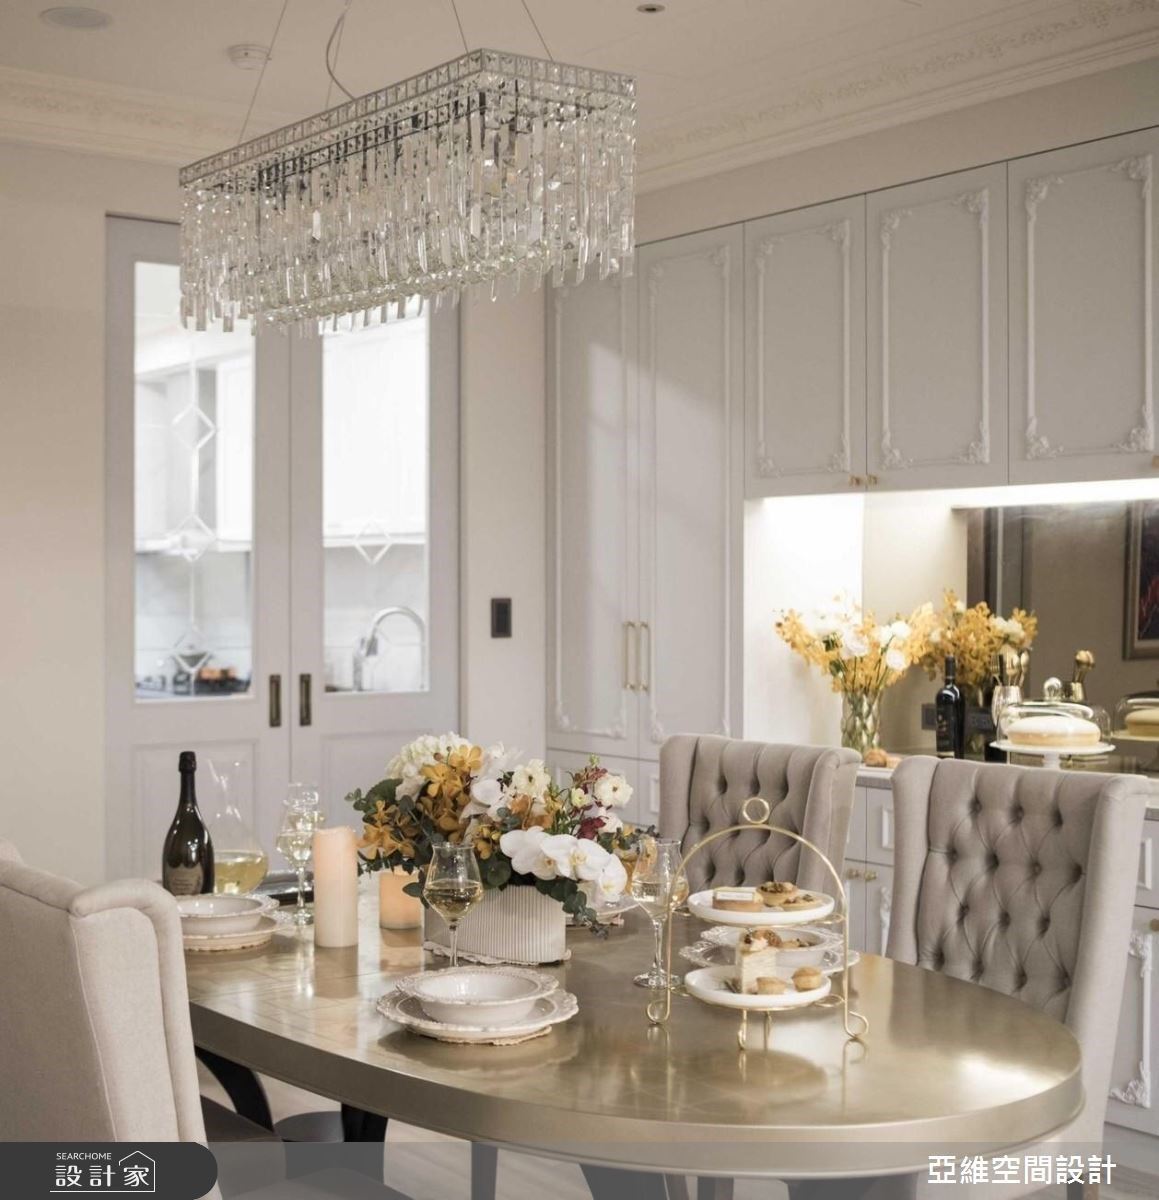 餐區配置質感的金箔餐桌、門片上的雕刻晶鑽玻璃、餐備櫃的茶鏡，都是從細節堆疊的低調奢華感。